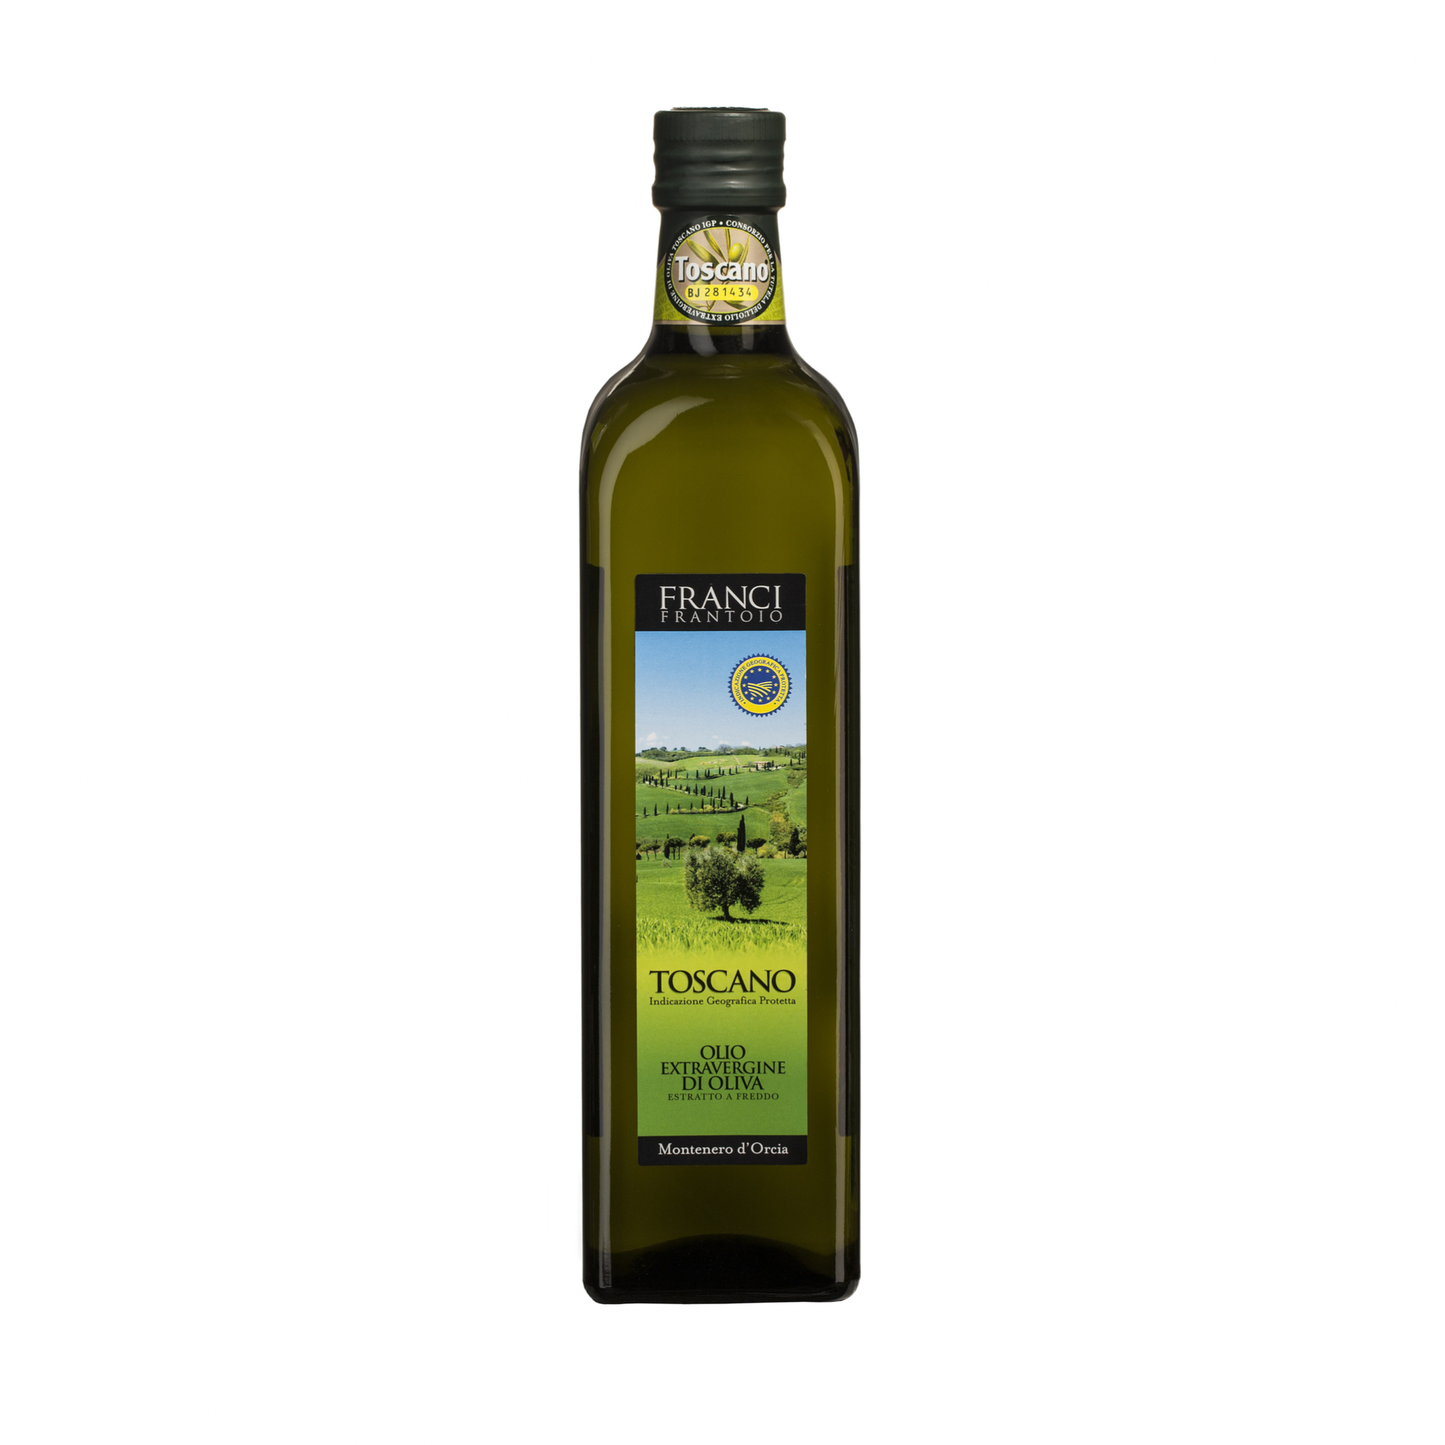 Frantoio Franci, Toscano IGP Extra Virgin Olive Oil 750ml FRA 22 007